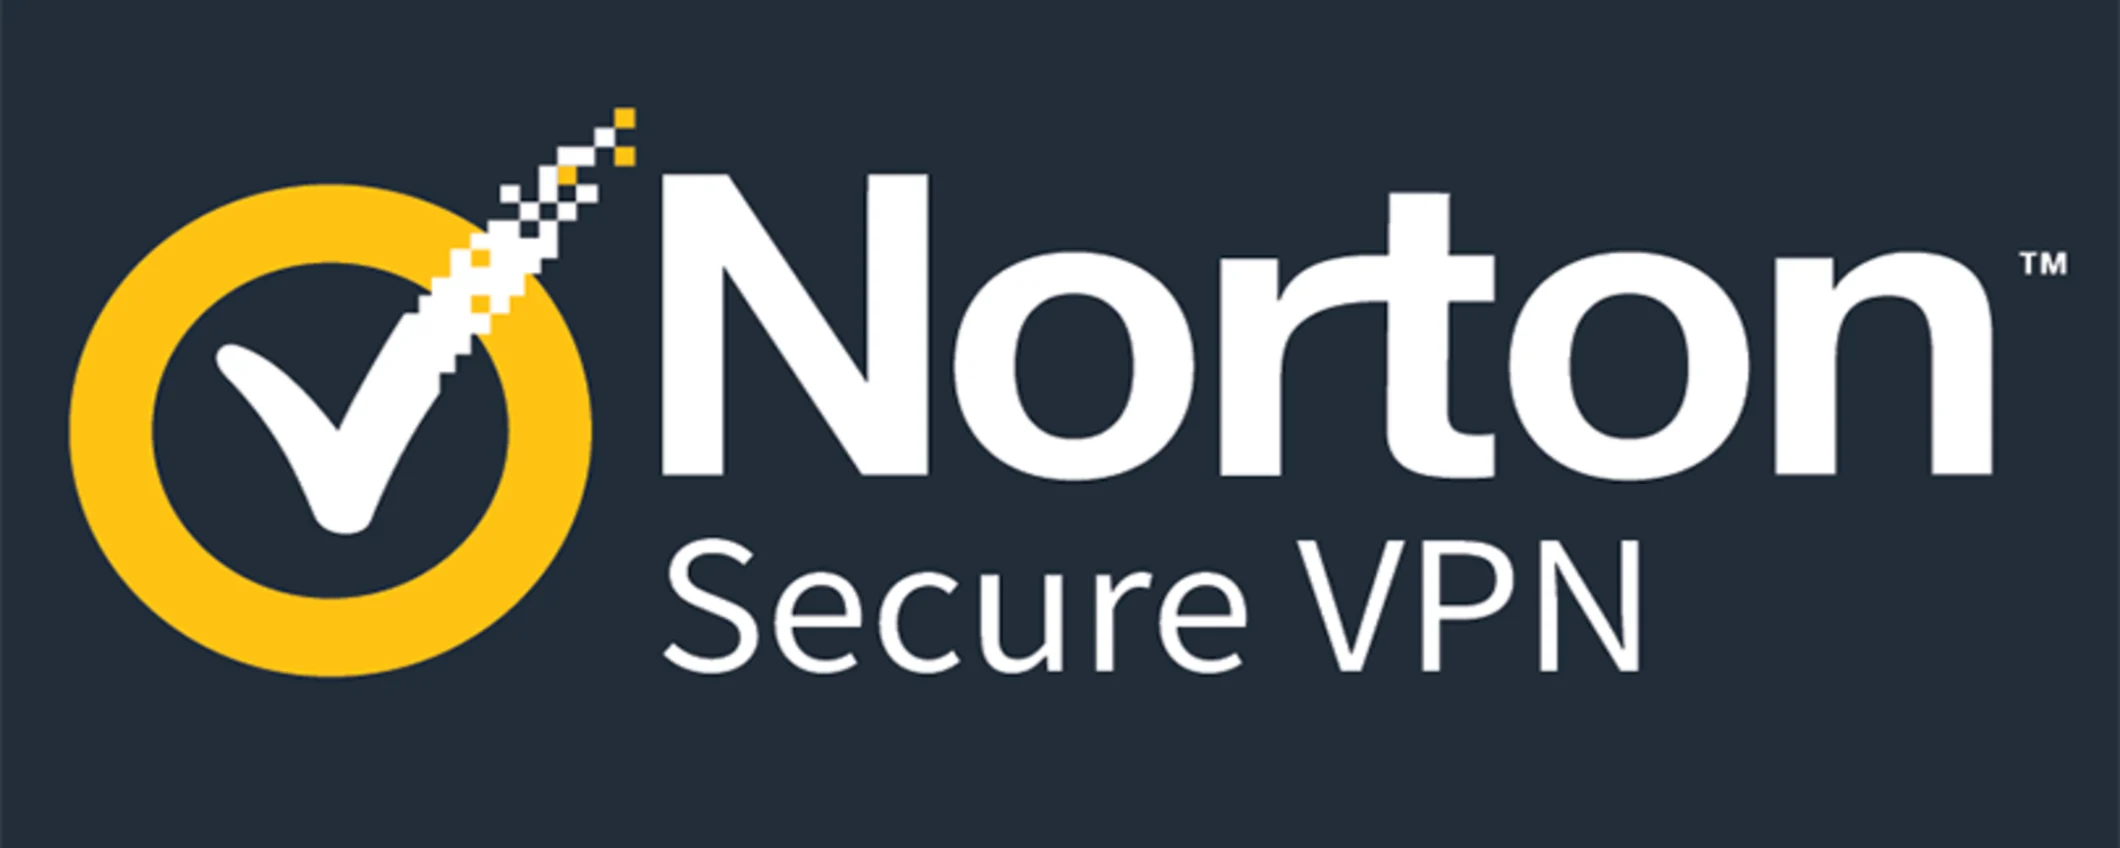 VPN di Norton: sicurezza e privacy in un solo clic